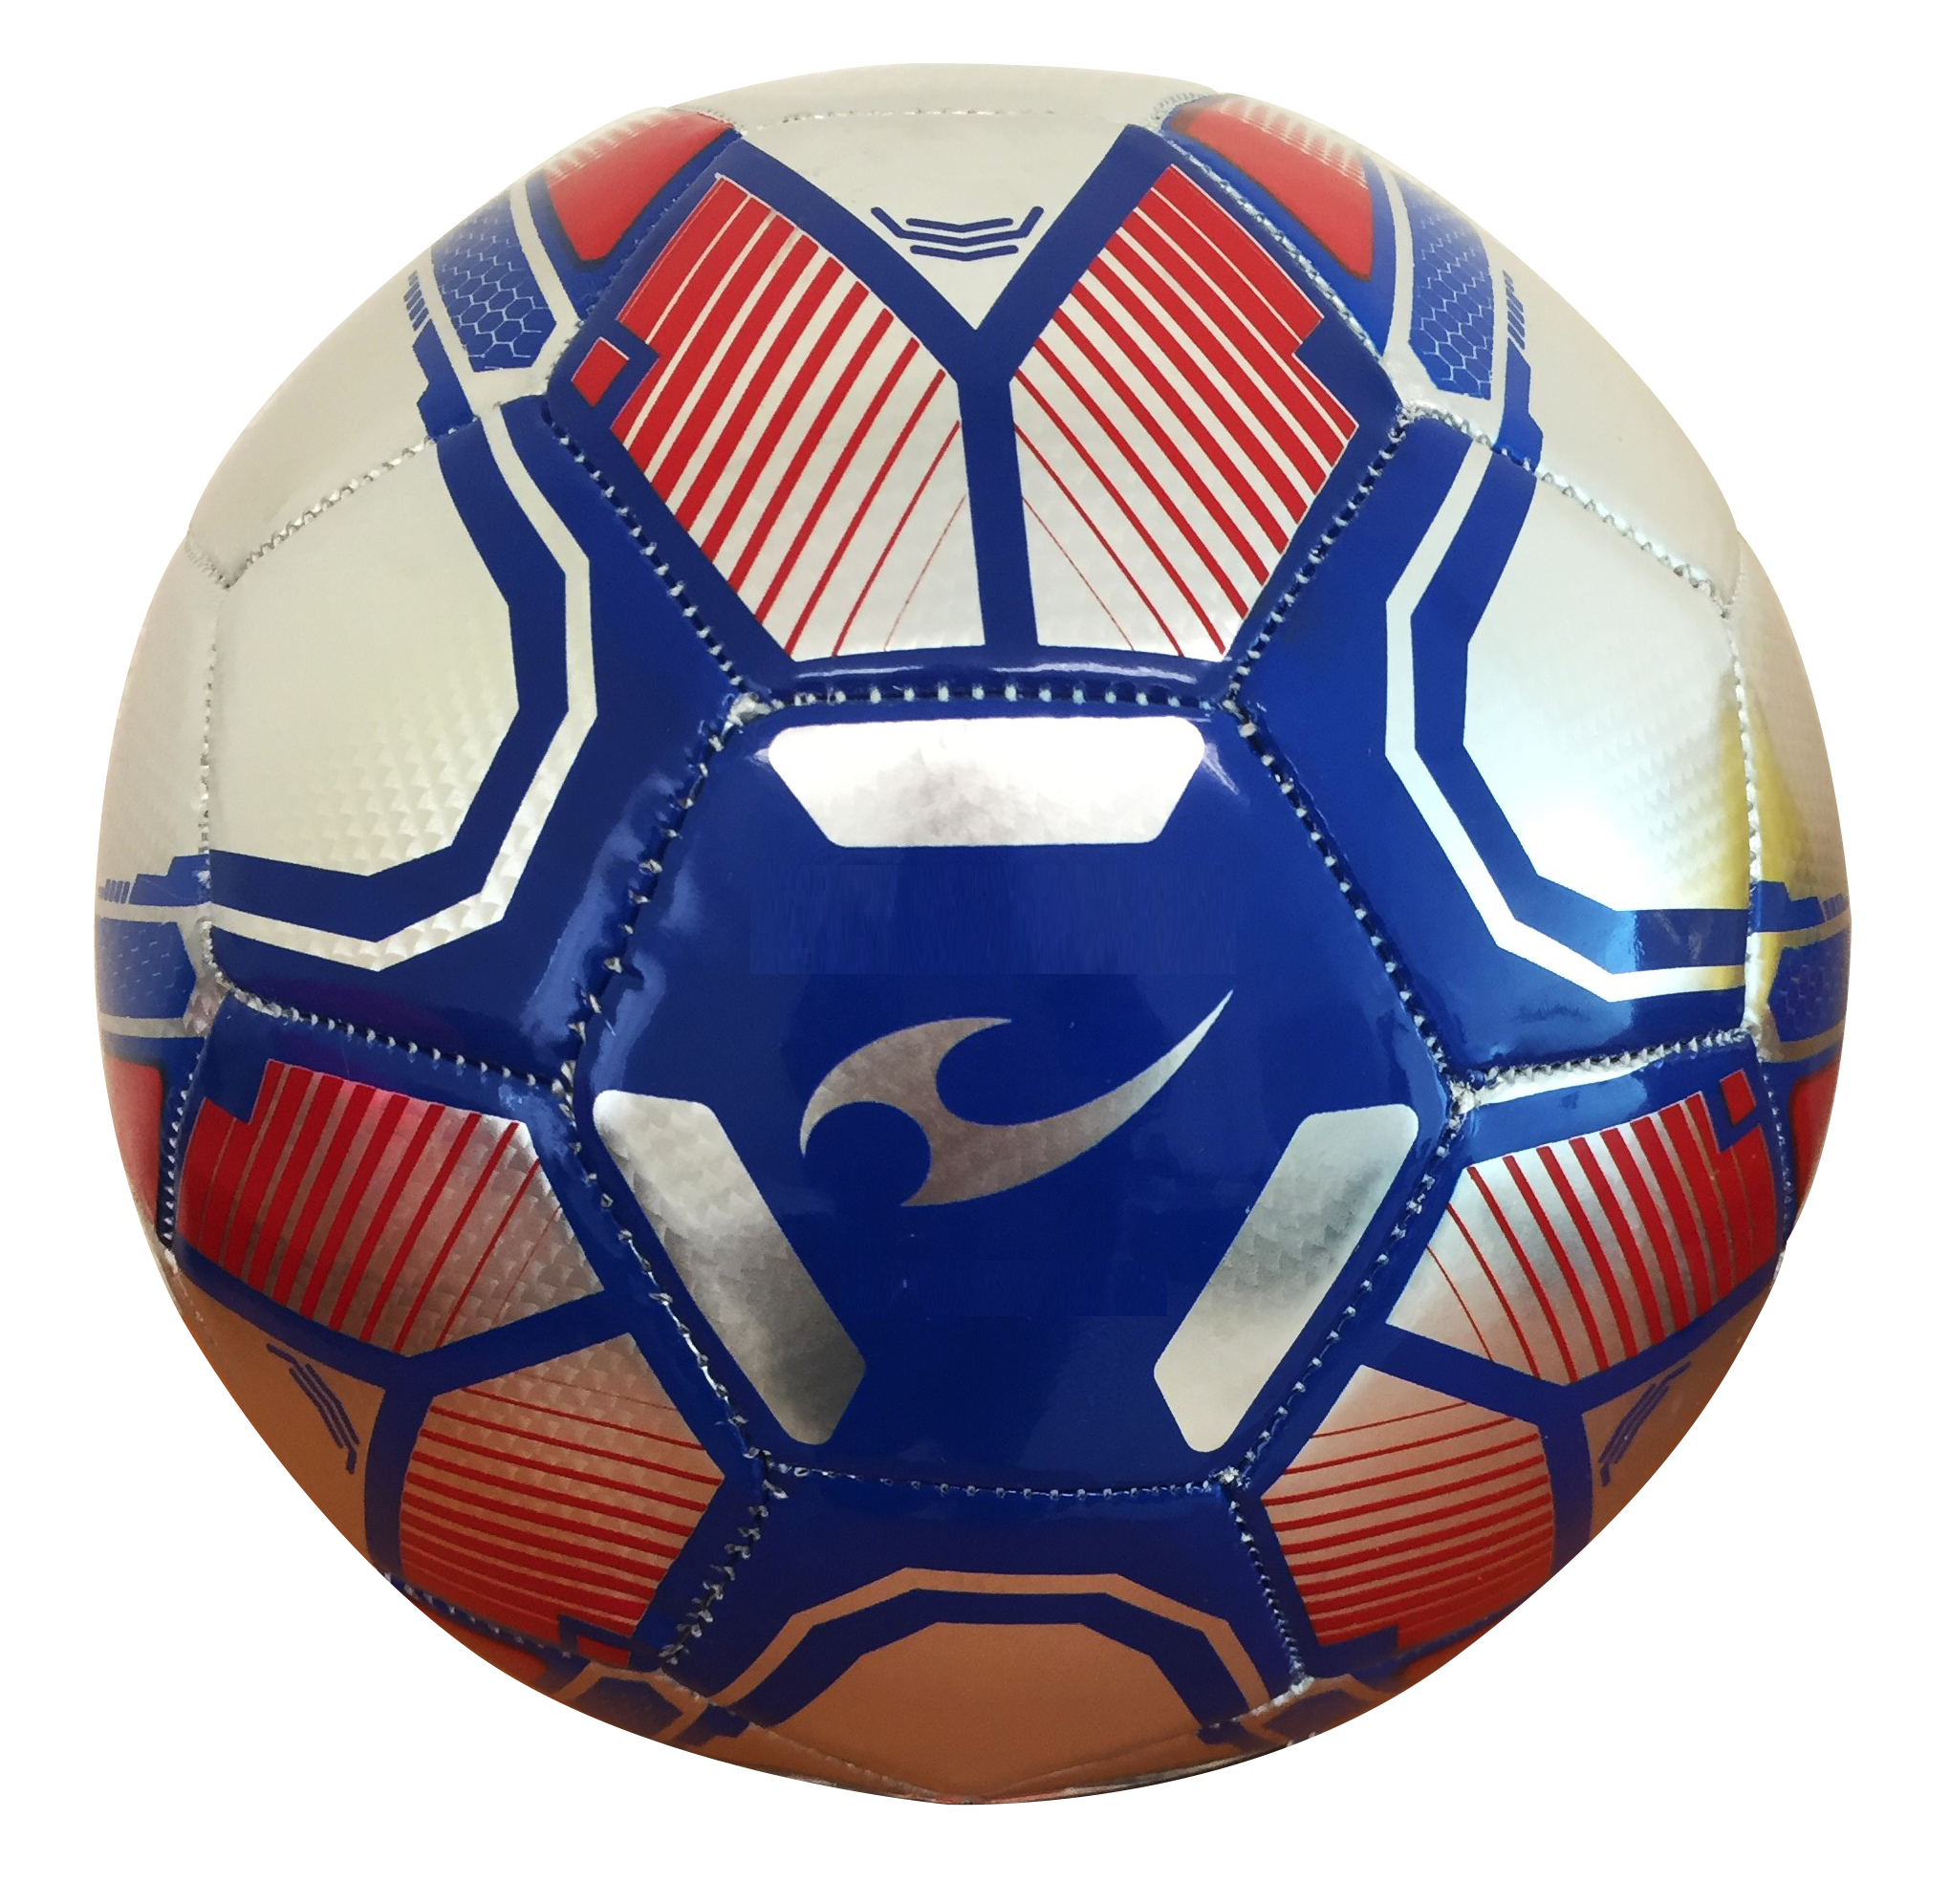 Balon futbol soccer promocional